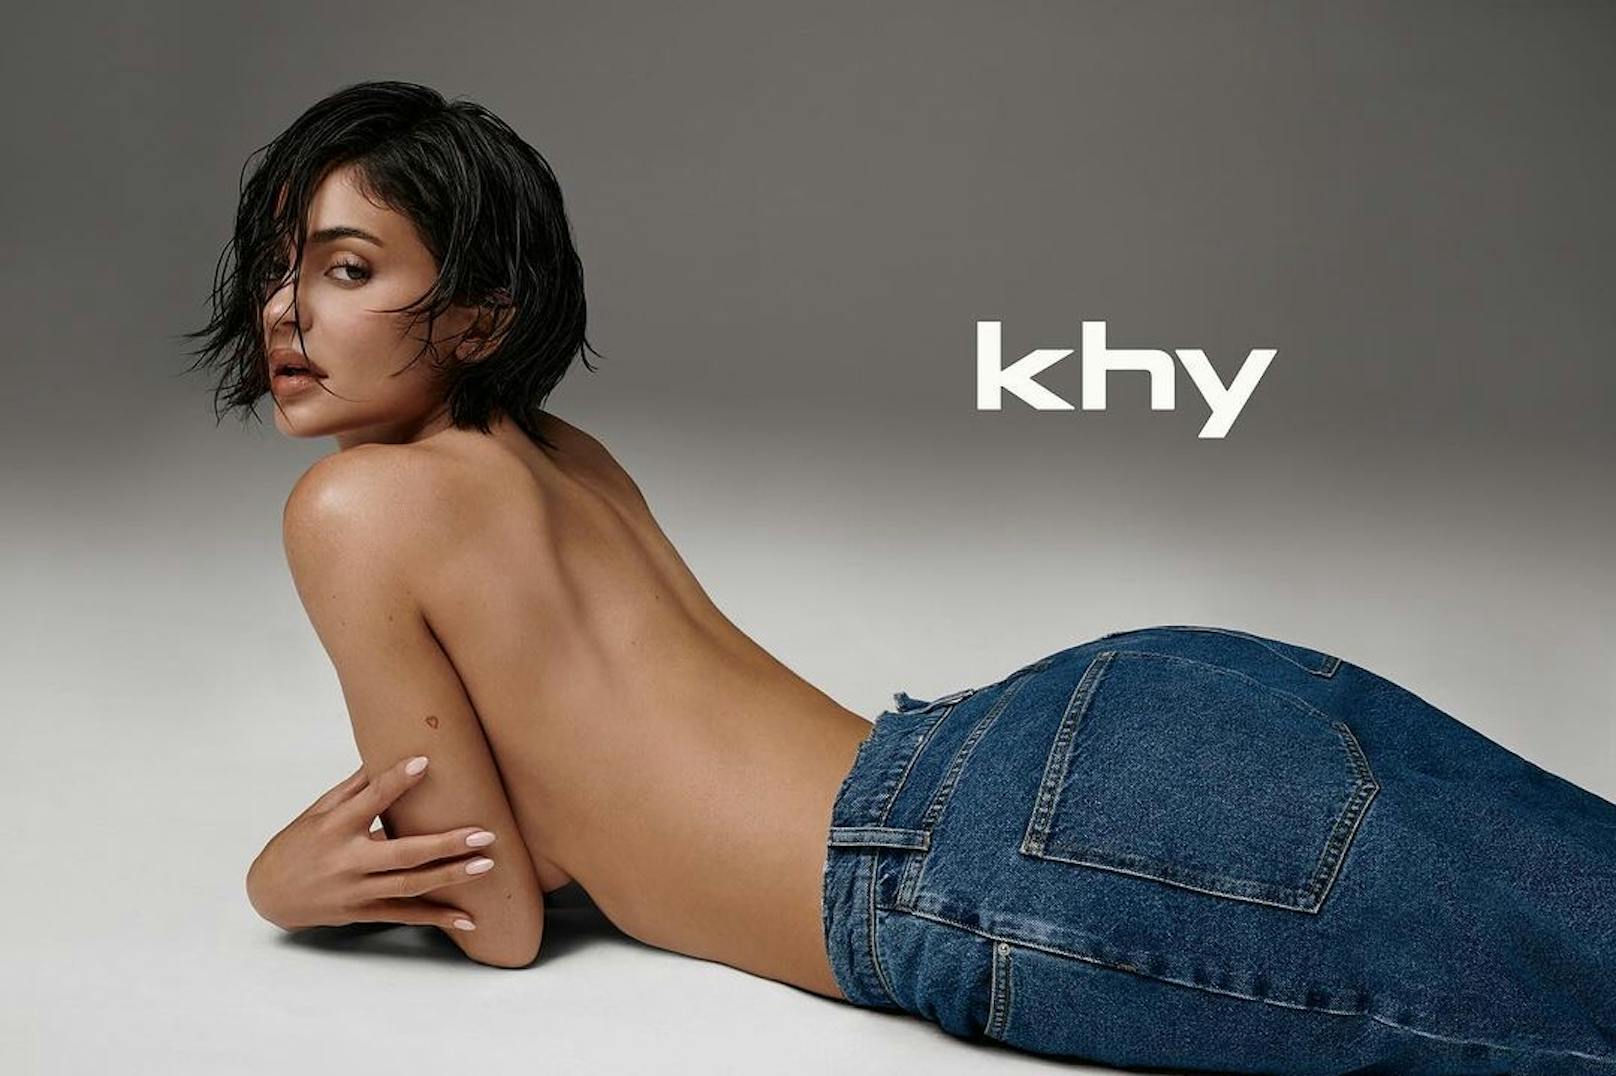 Ob Kylie ihre Haare wirklich abgeschnitten hat, oder es sich um eine Perücke handelt, ist nicht bekannt.